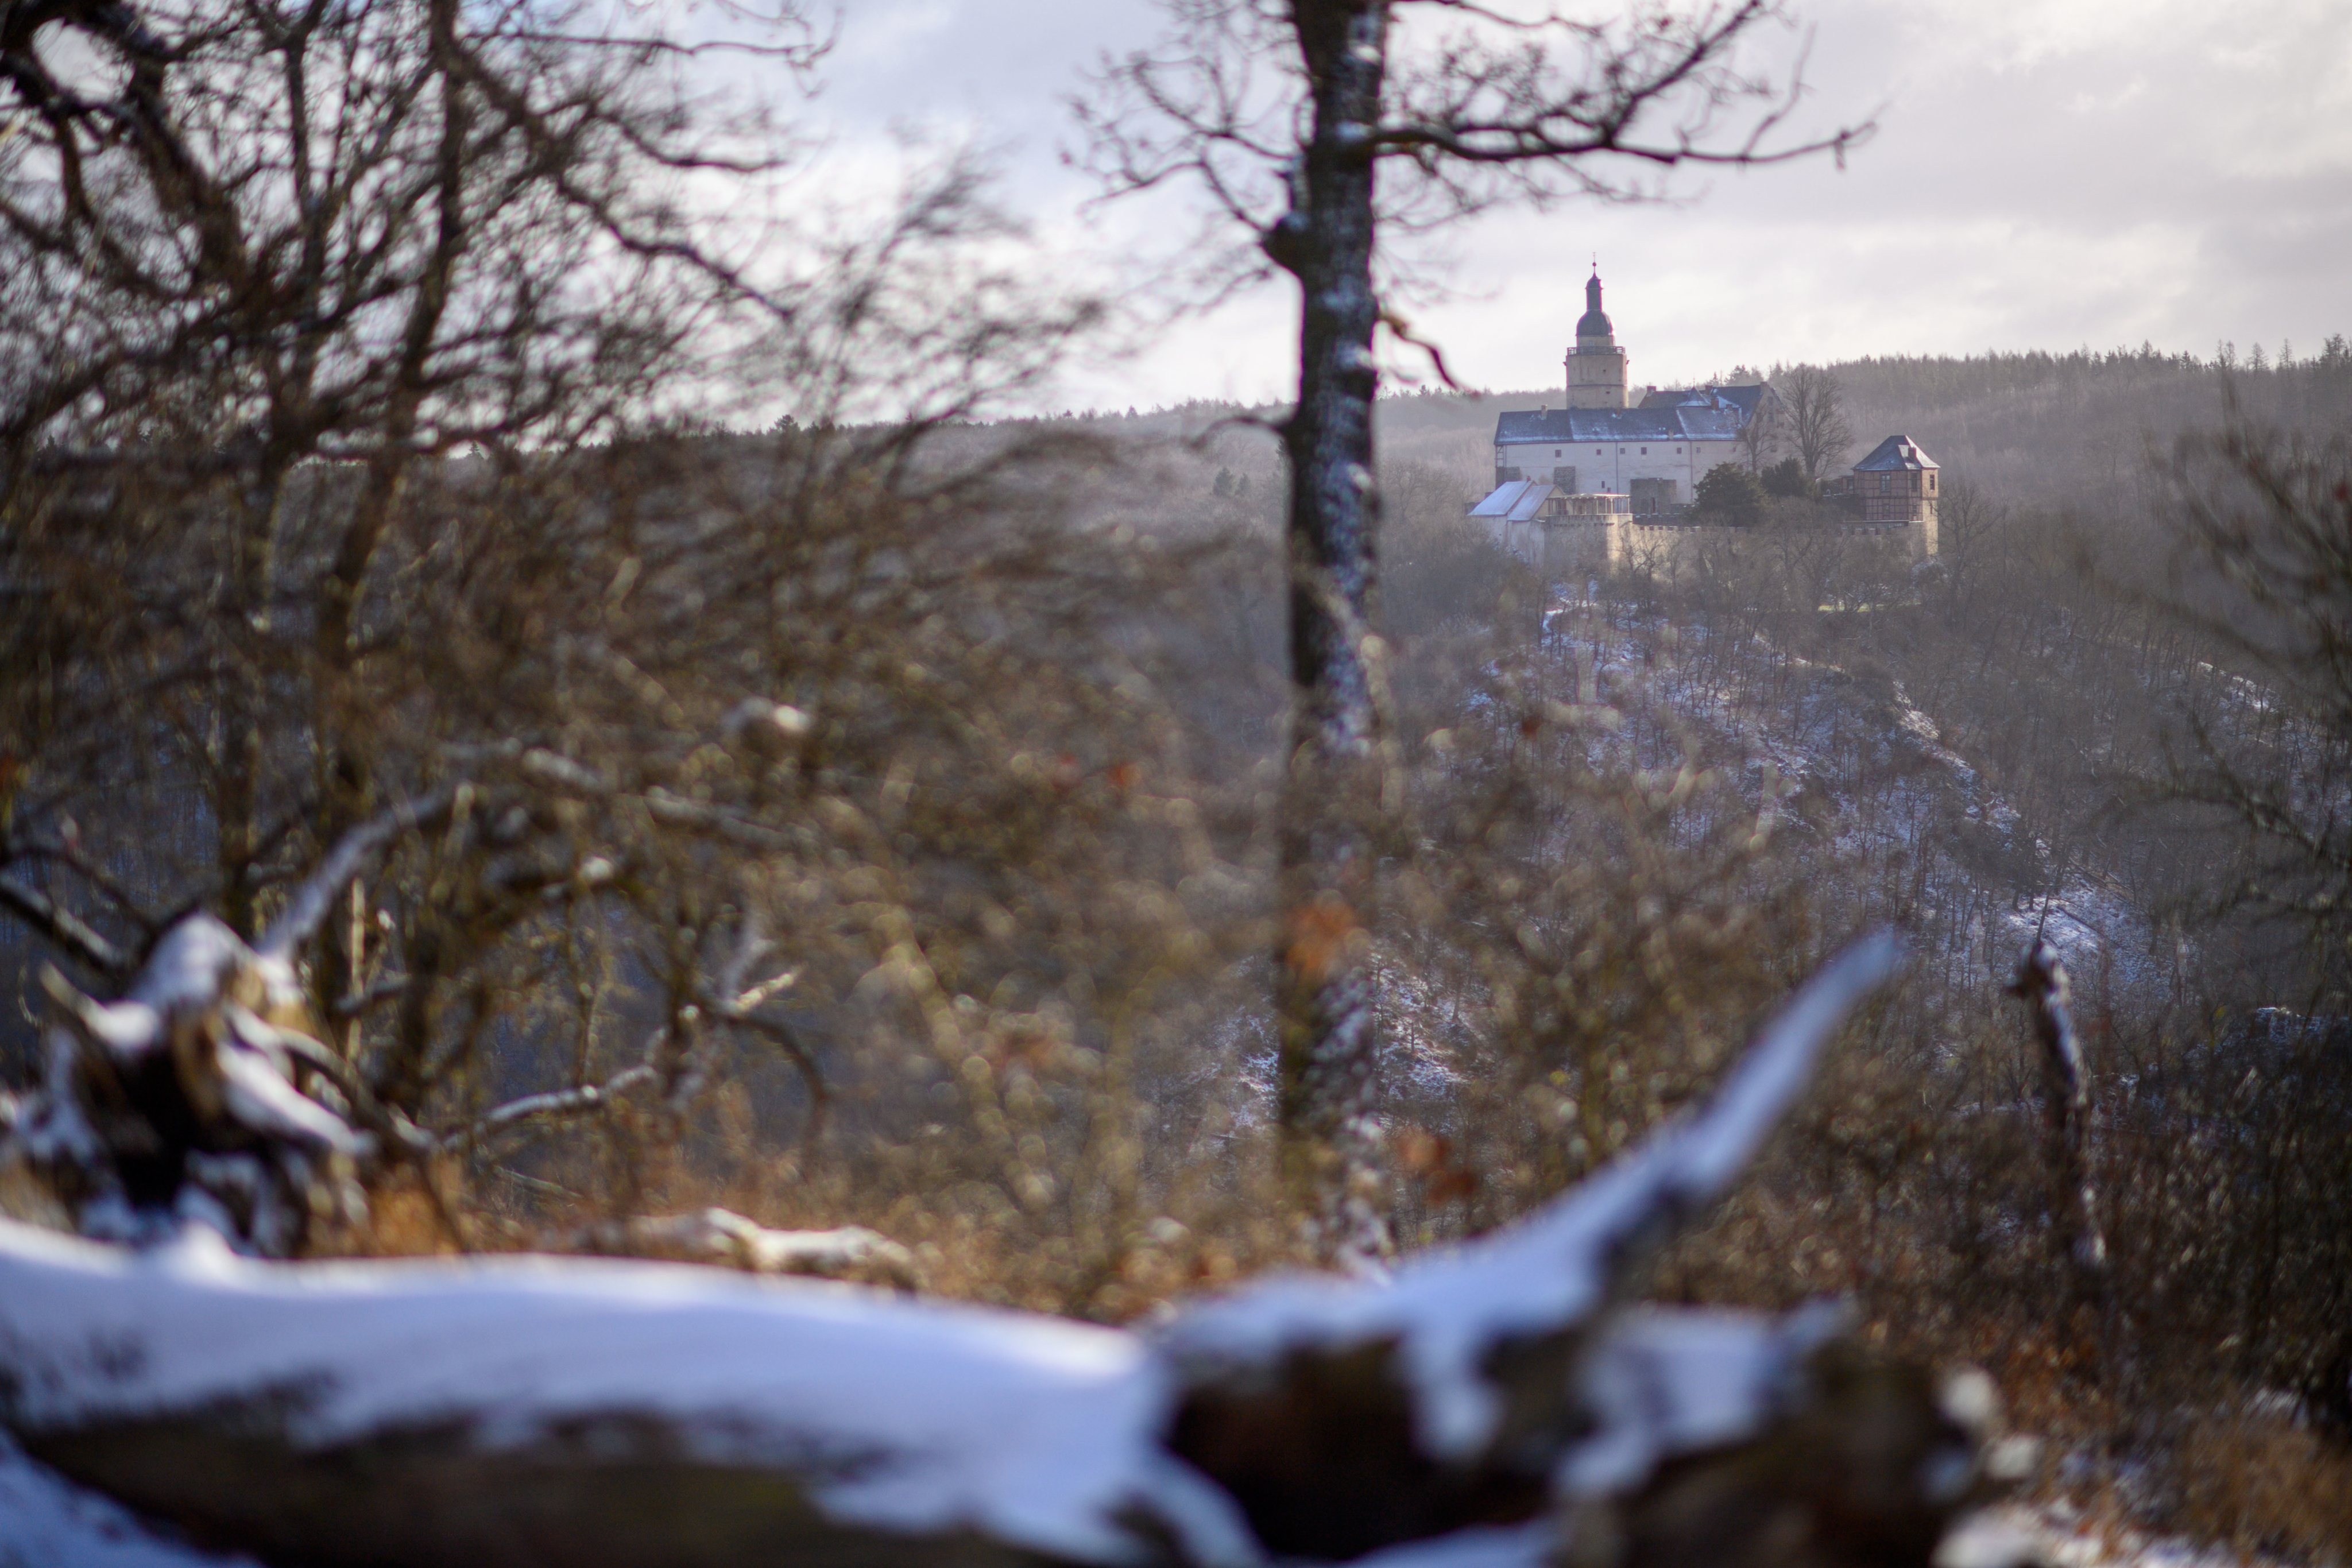 Queda de neve no castelo de Falkenstein, no norte da Alemanha, no dia 20 de janeiro